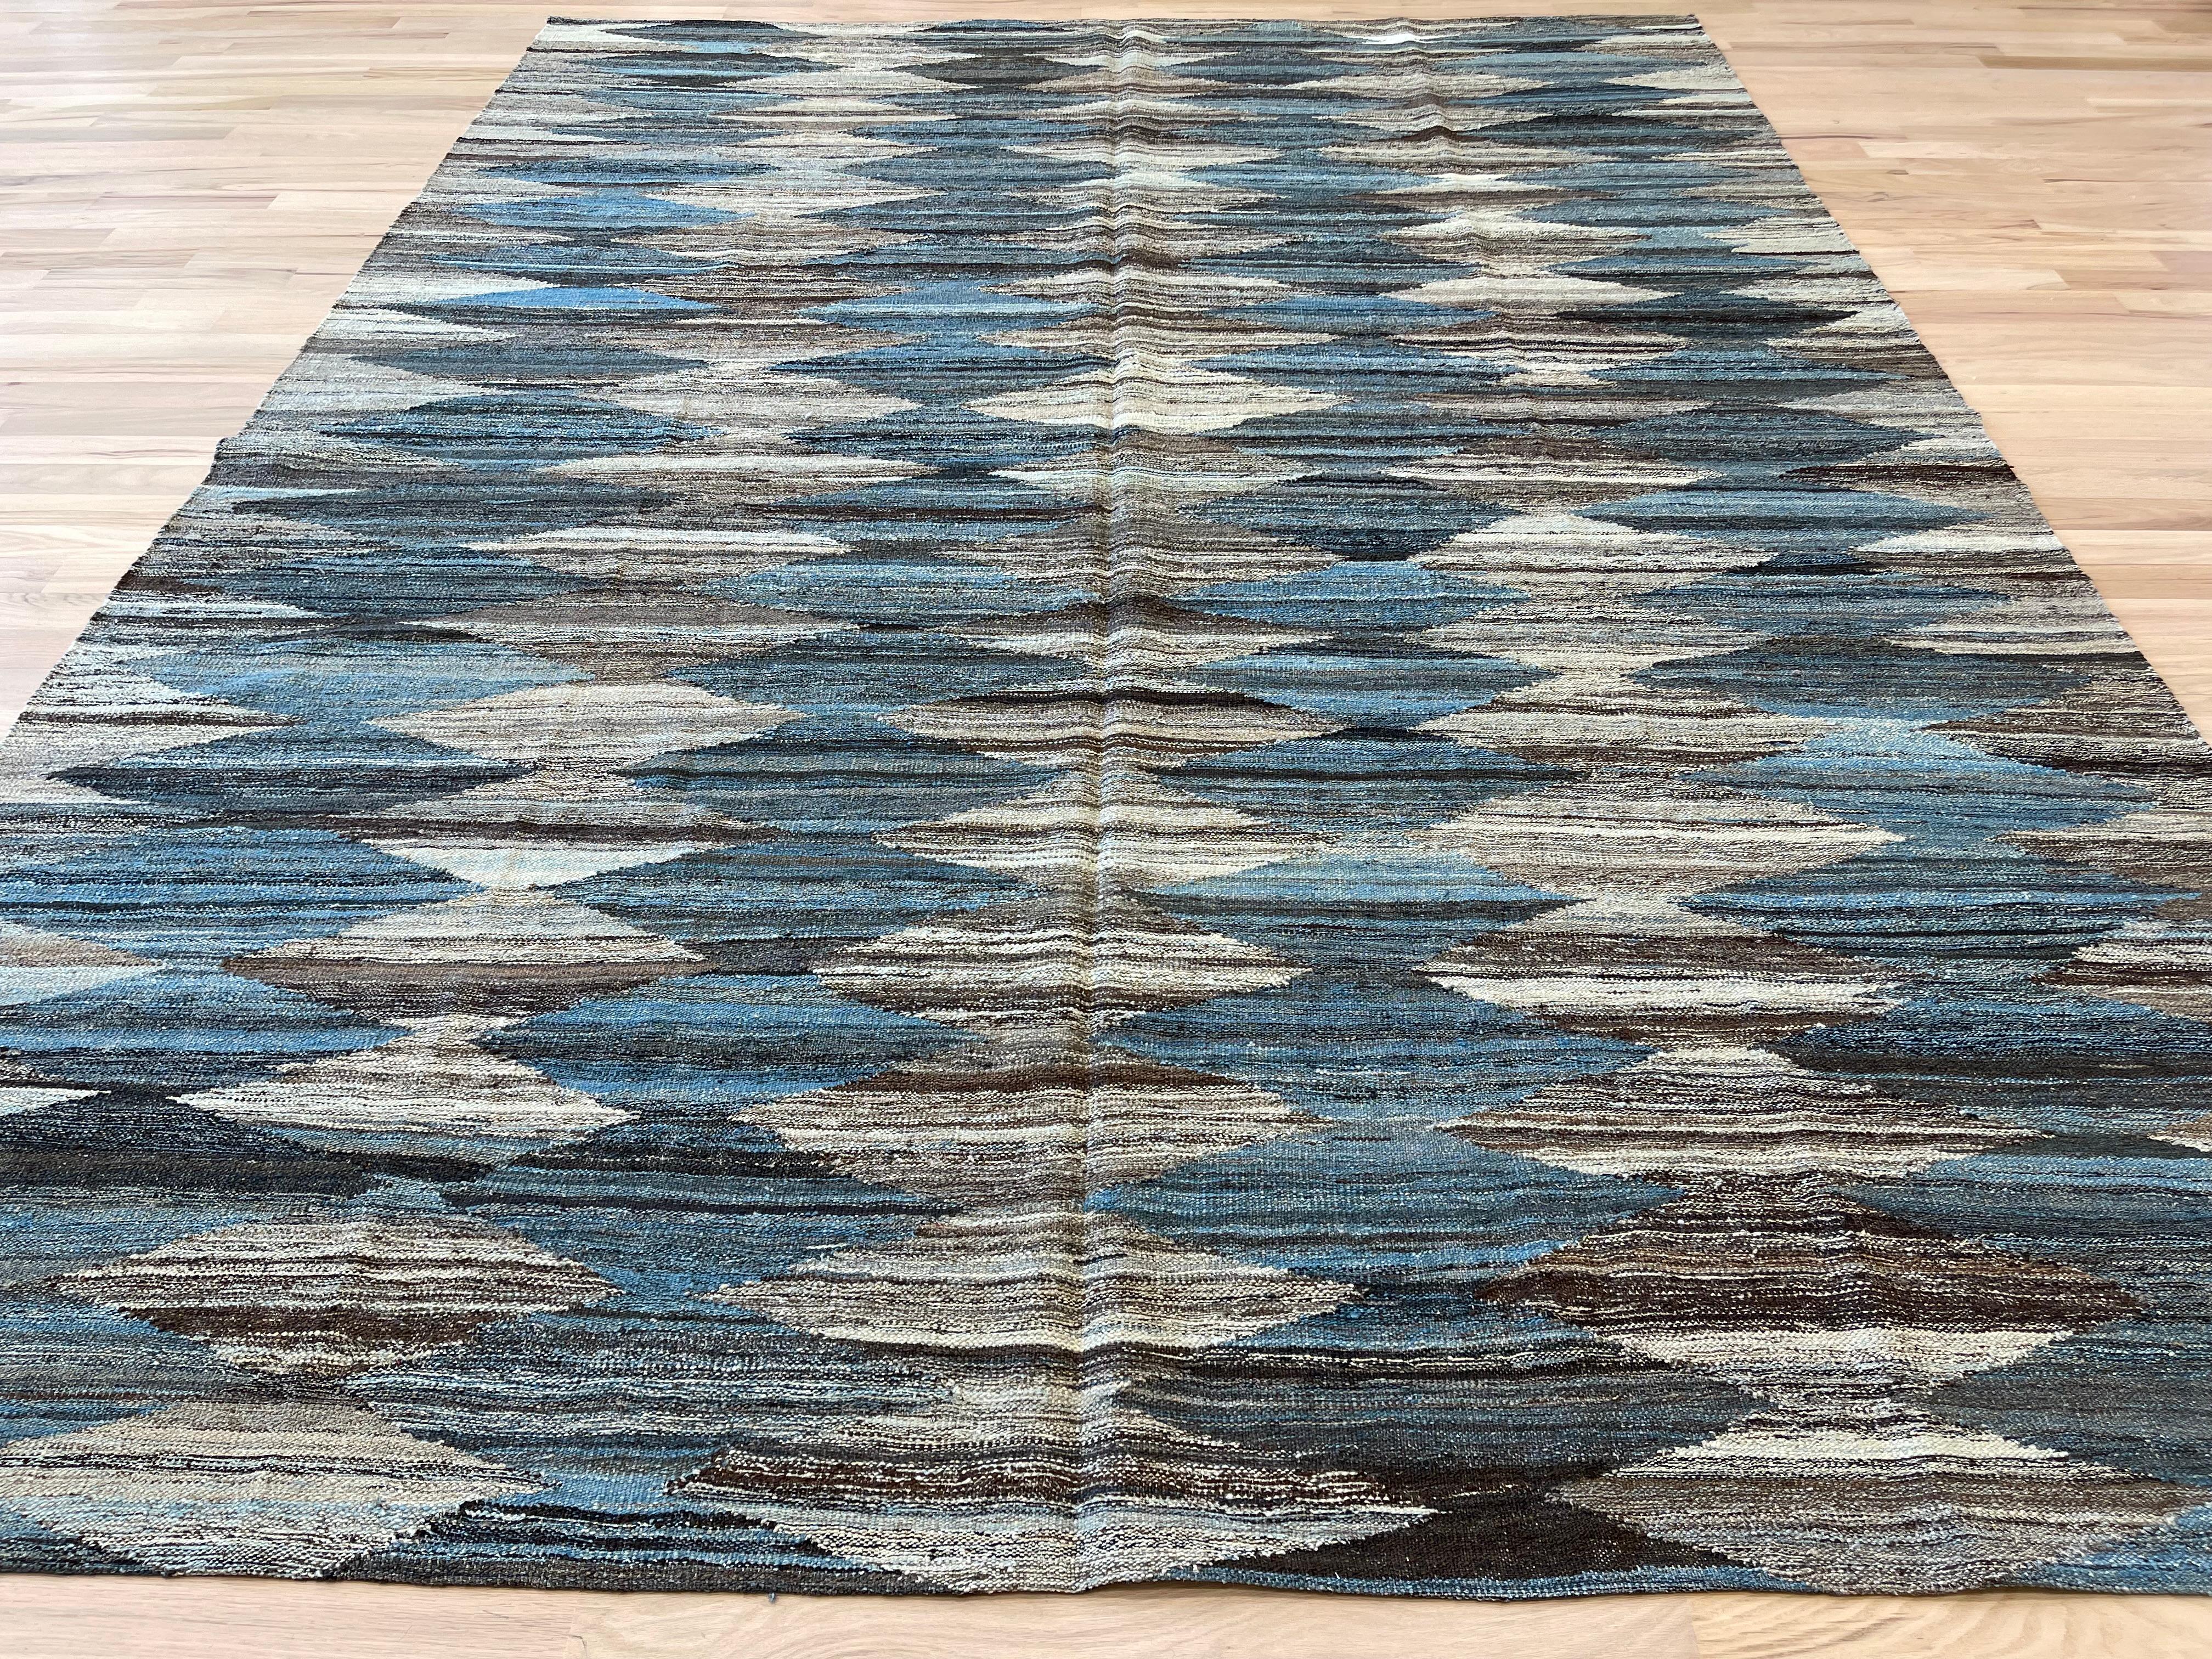 Erhöhen Sie Ihre Wohnkultur mit unserem türkischen Teppich, der ein atemberaubendes Rautenmuster in Blau-, Grau-, Beige- und Weißtönen aufweist. Mit seiner reversiblen Verwendung bietet dieser Teppich Vielseitigkeit und einen Hauch von Eleganz für